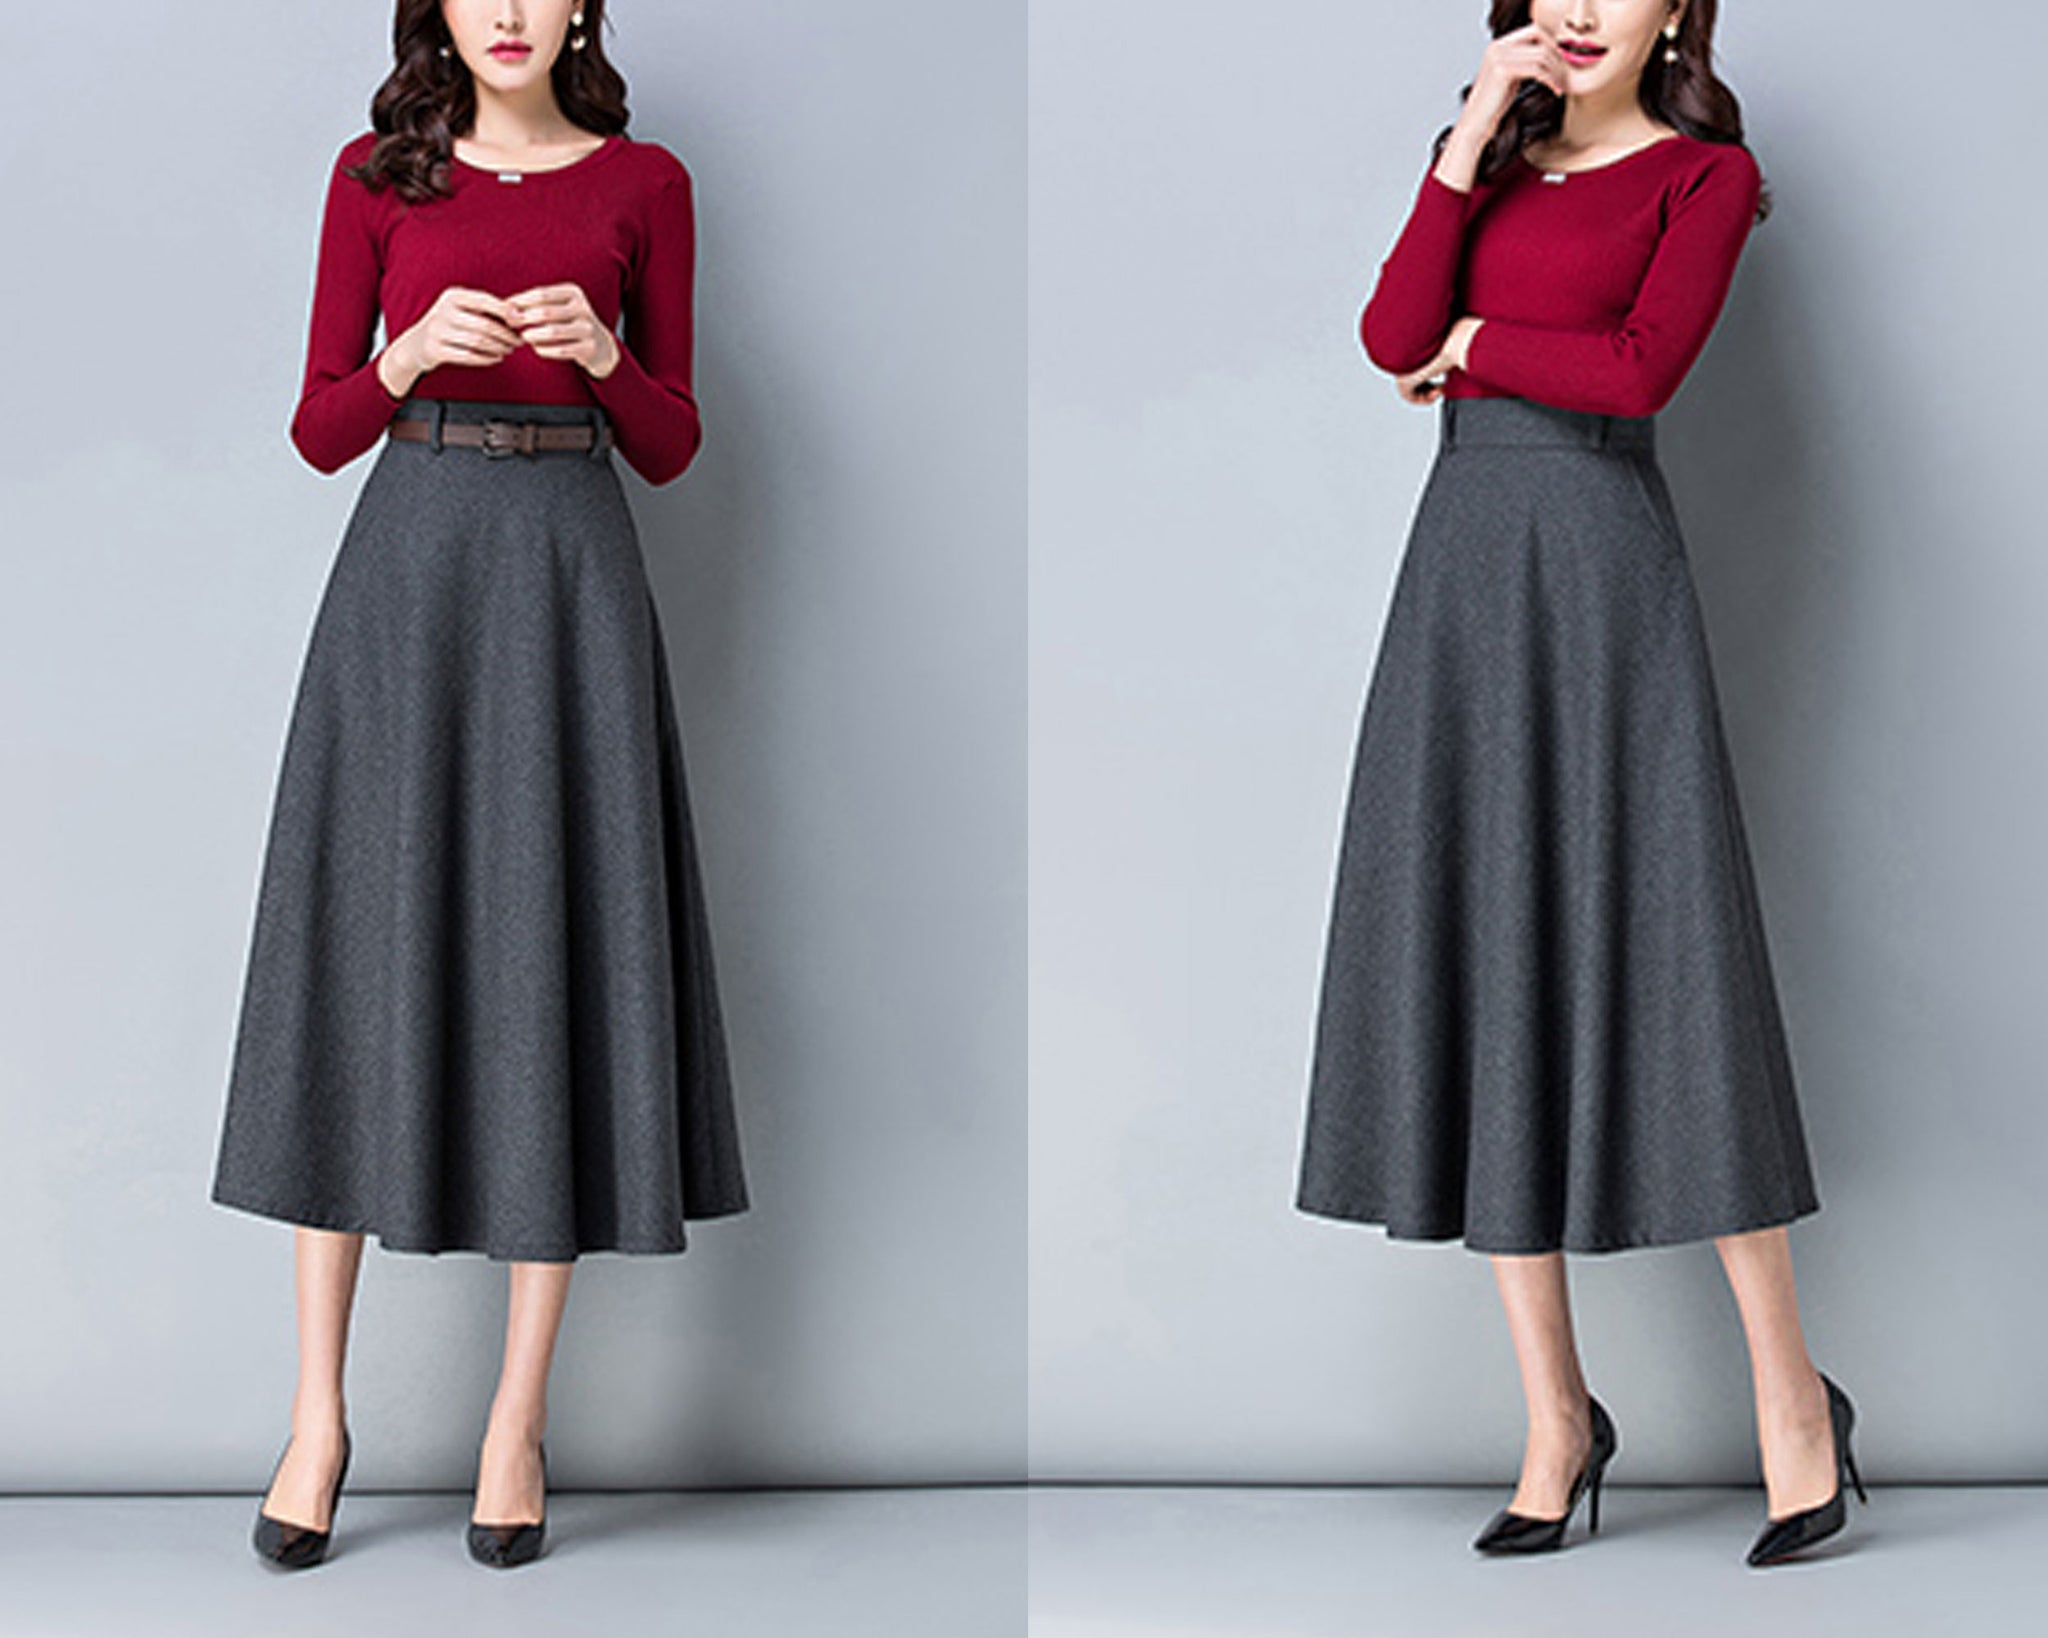 Wool skirt, midi skirt, Winter skirt, dark gray skirt, long skirt